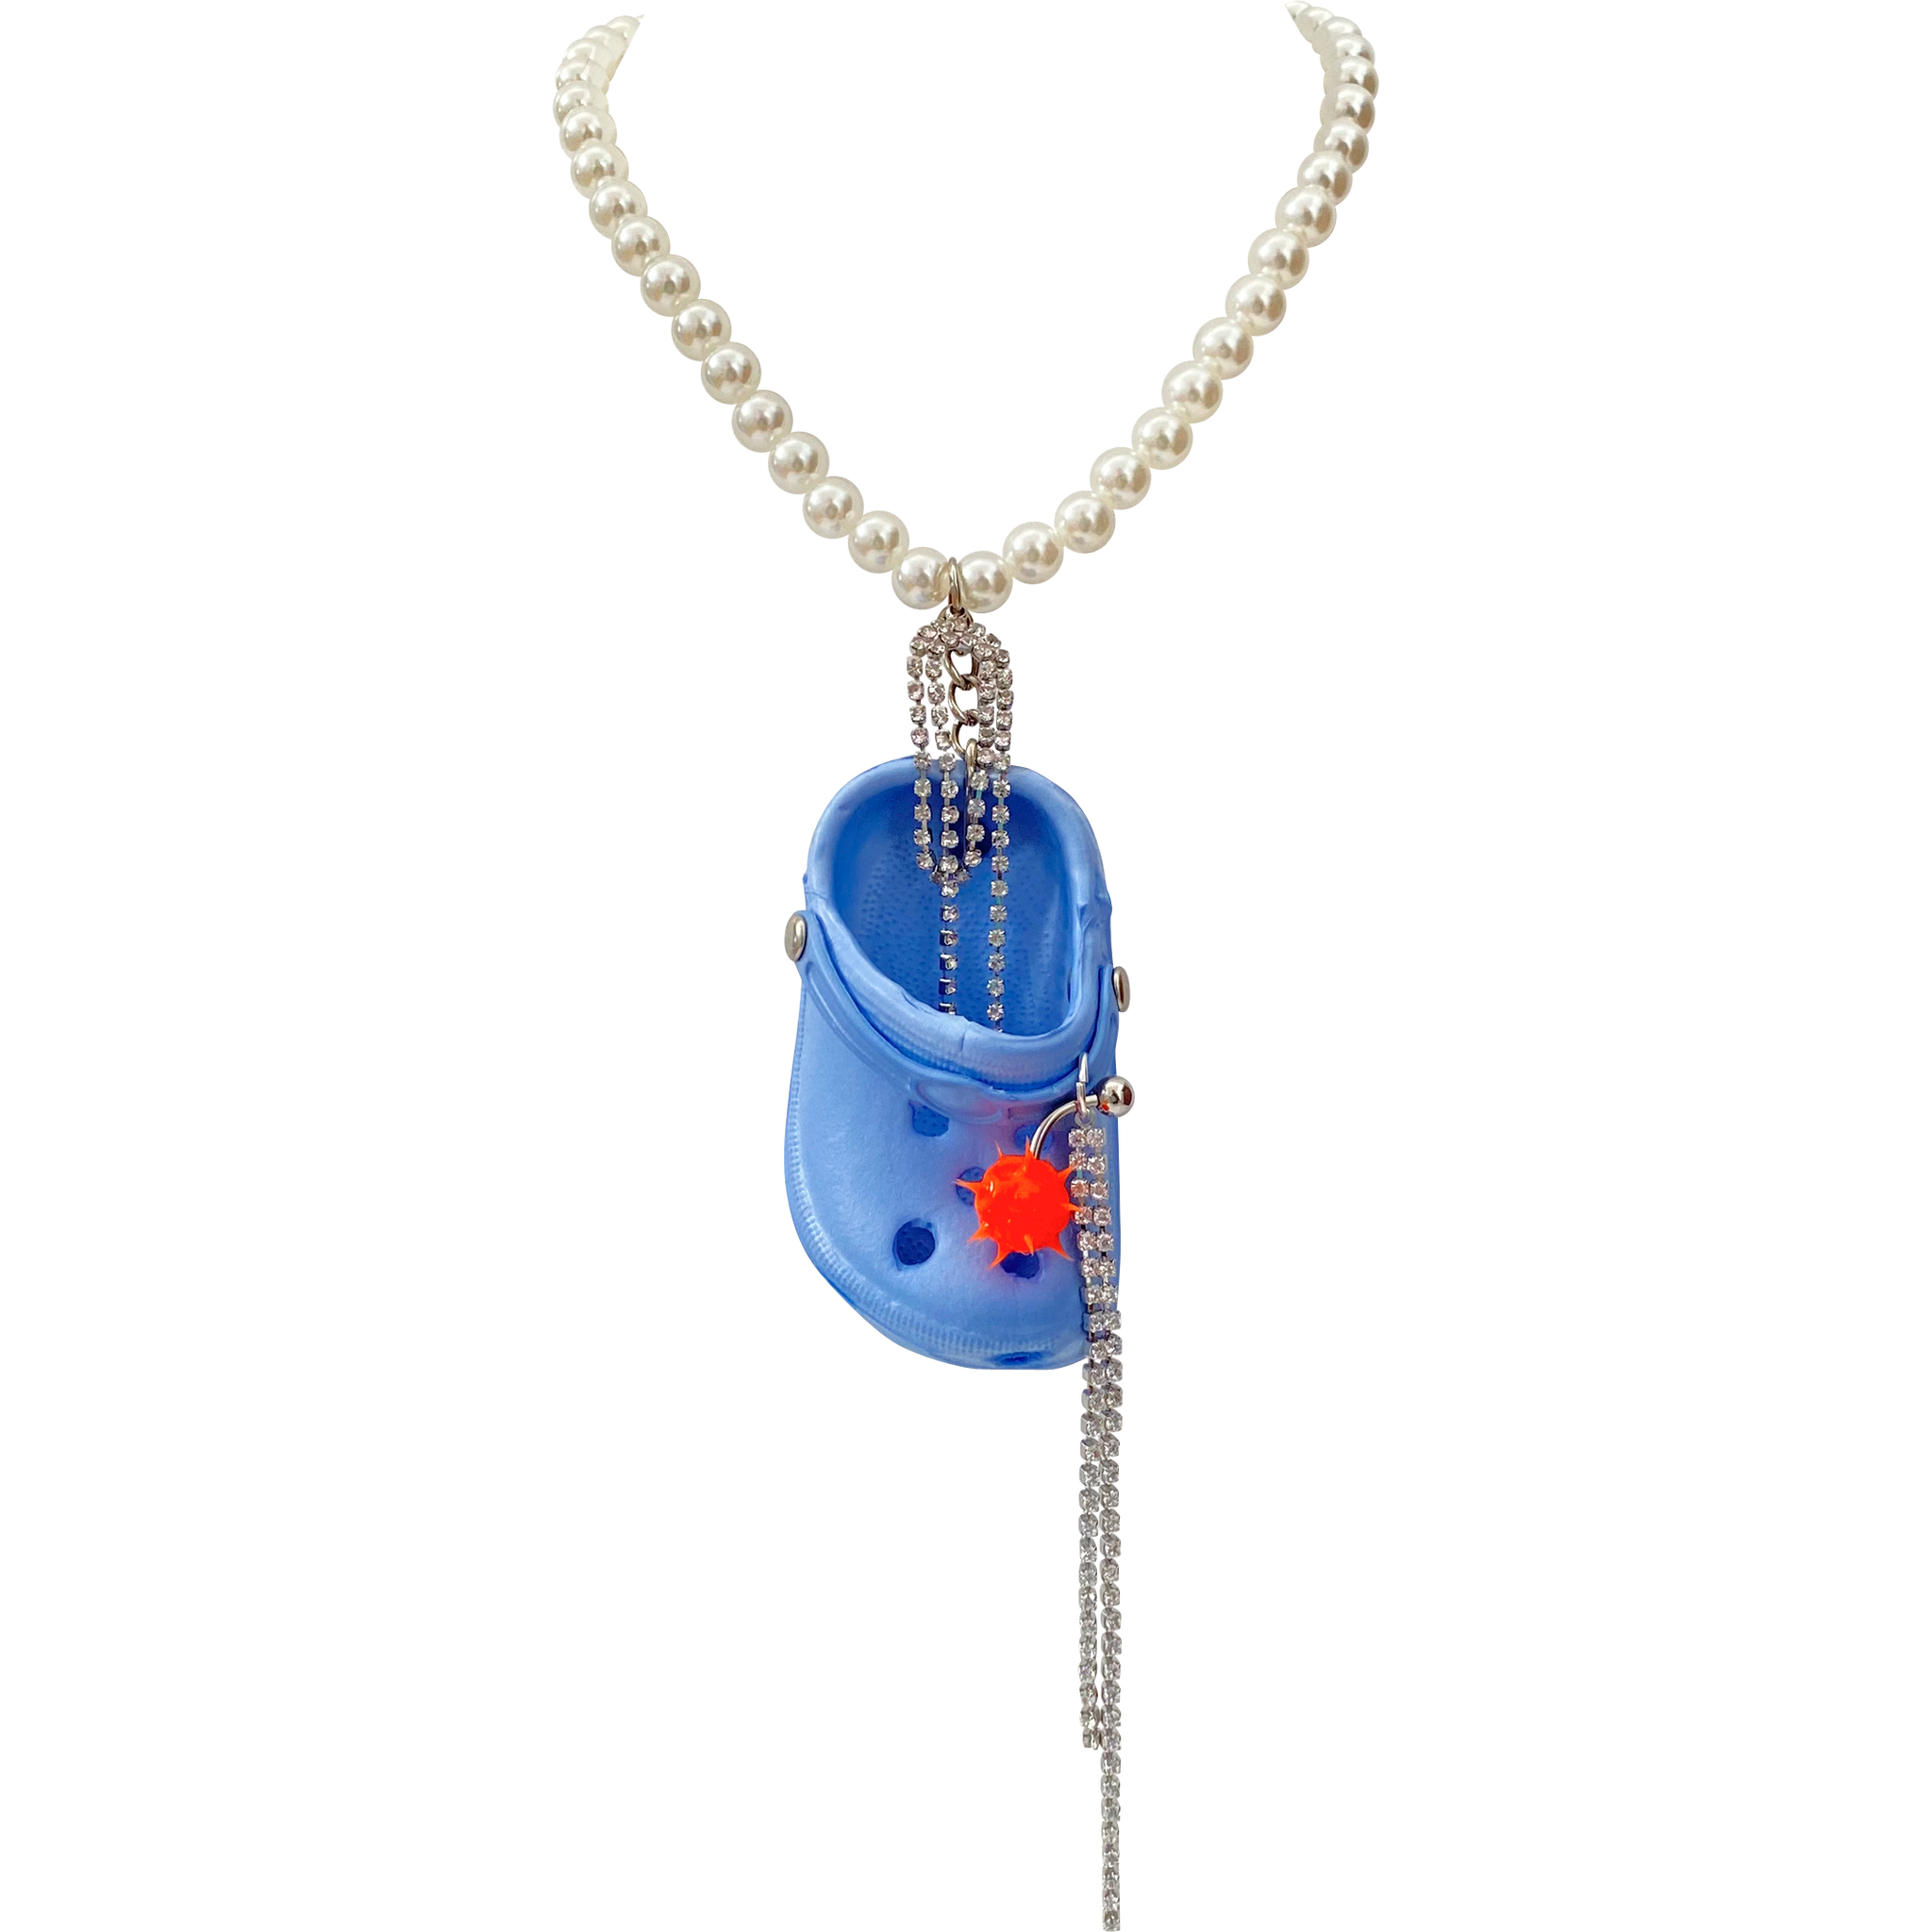 Blue Bedazzled Mini Croc Necklace